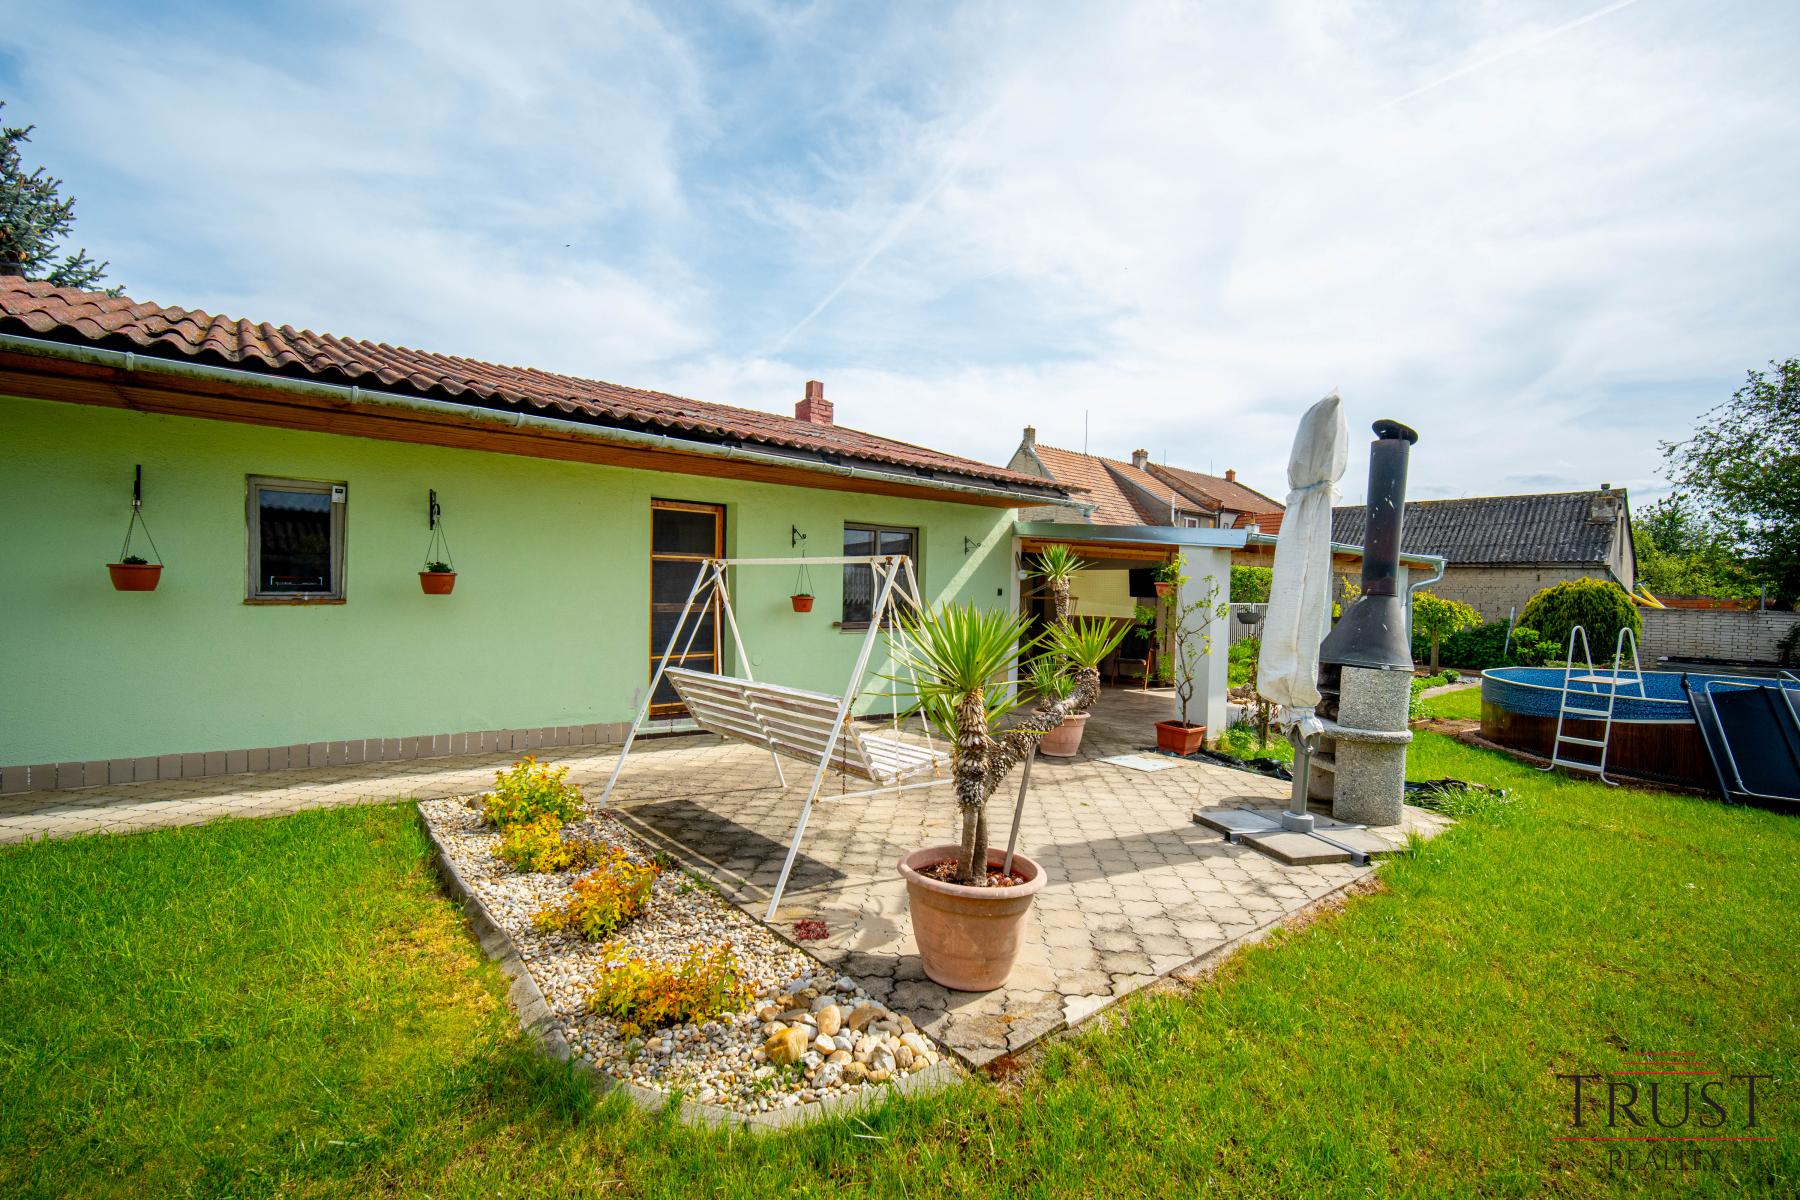 Prodej, rodinný dům, 187 m2, pozemek 922, G, S, pergola, bazén, Vnorovy, Lidéřovice